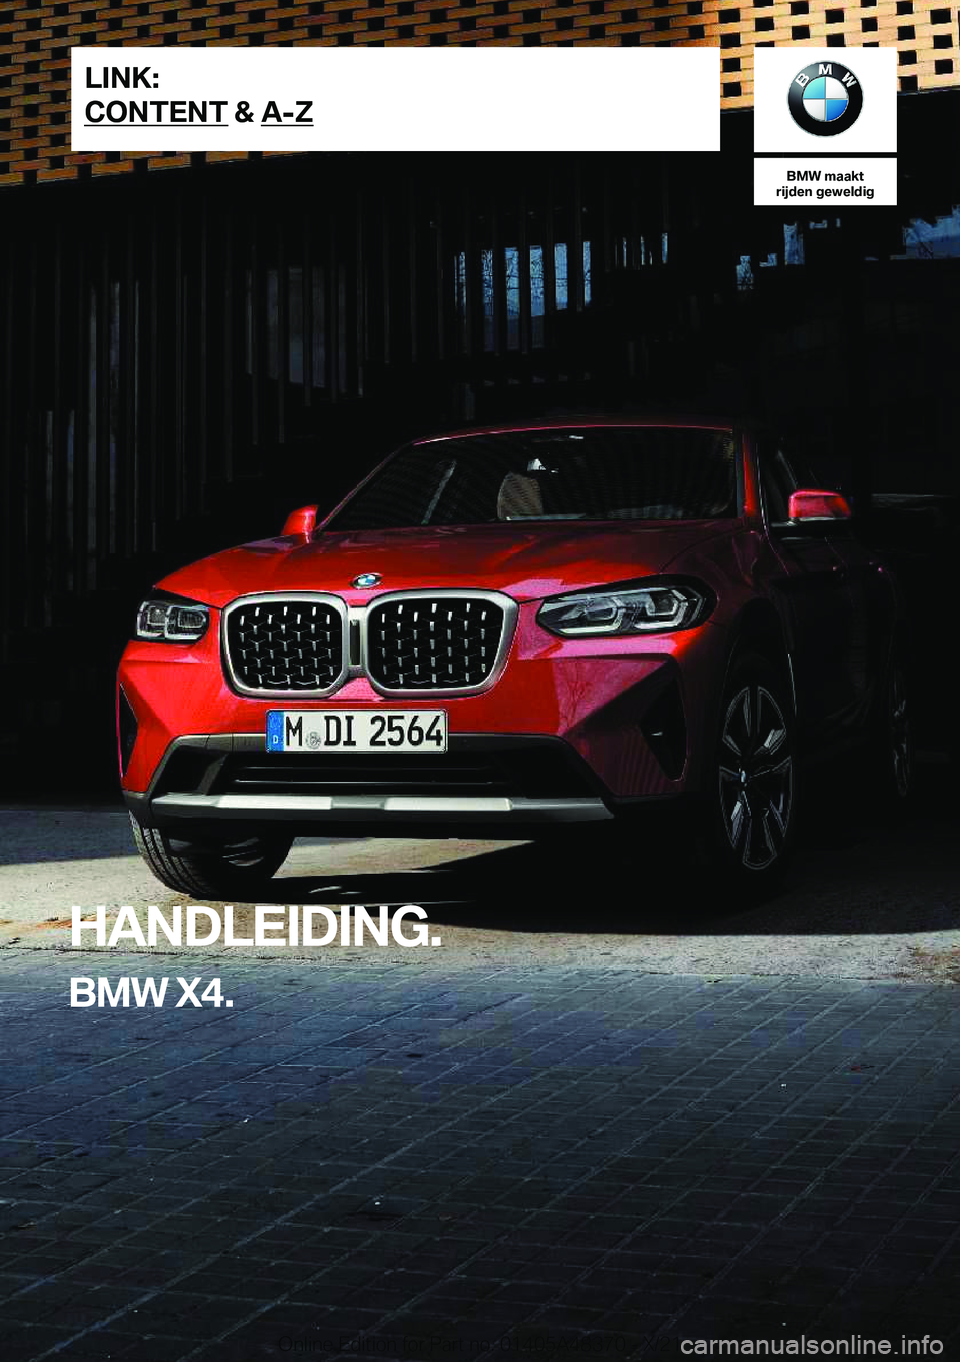 BMW X4 2022  Instructieboekjes (in Dutch) �B�M�W��m�a�a�k�t
�r�i�j�d�e�n��g�e�w�e�l�d�i�g
�H�A�N�D�L�E�I�D�I�N�G�.
�B�M�W��X�4�.�L�I�N�K�:
�C�O�N�T�E�N�T��&��A�-�Z�O�n�l�i�n�e��E�d�i�t�i�o�n��f�o�r��P�a�r�t��n�o�.��0�1�4�0�5�A�4�8�3